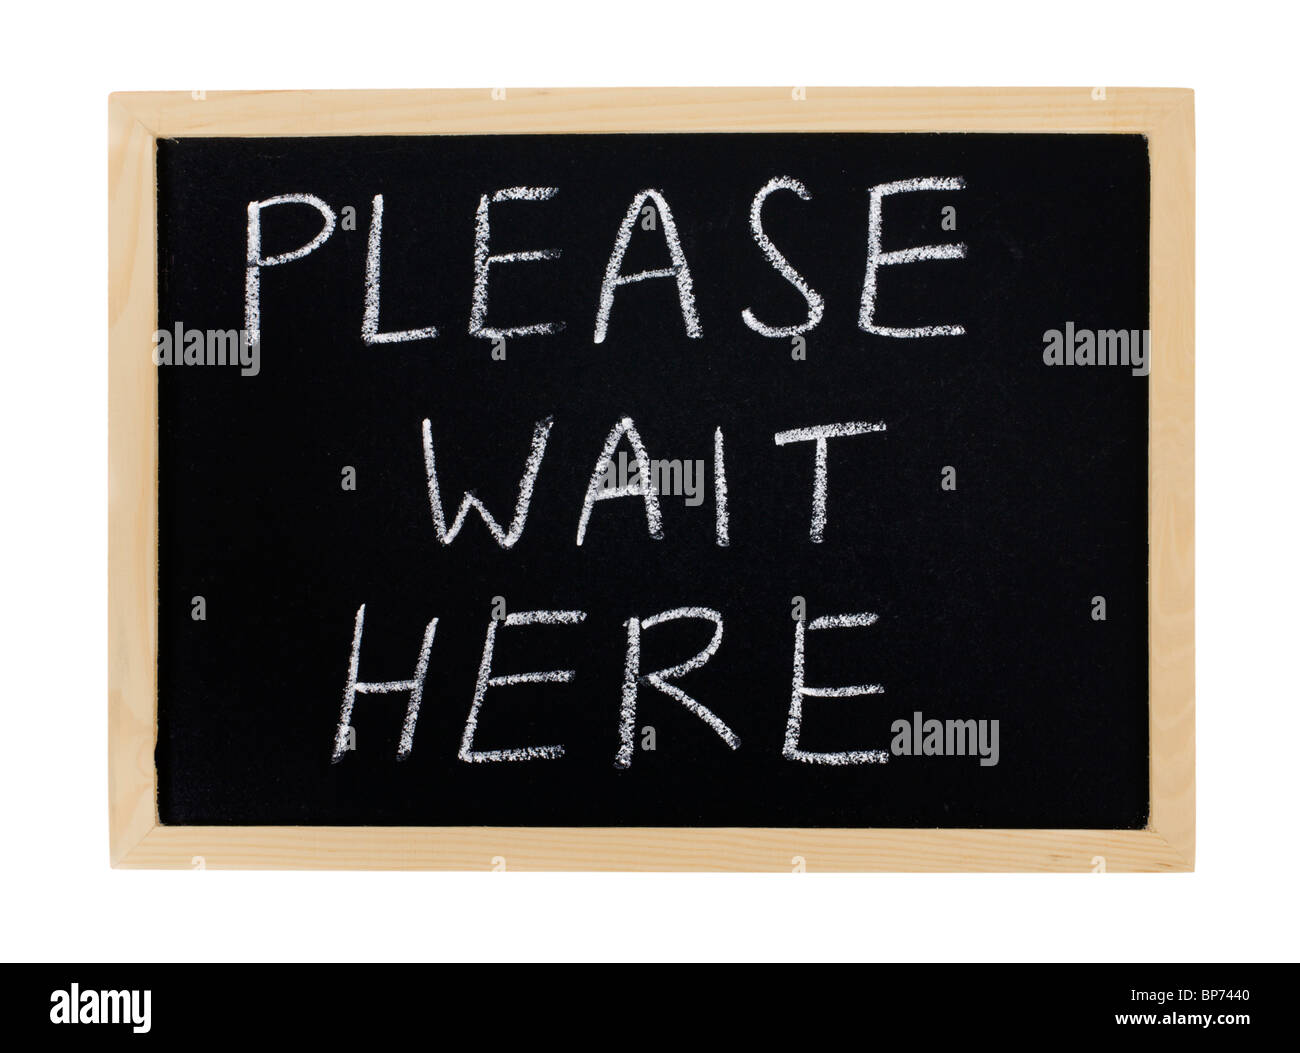 a message please wait here on a chalkboard BP7440